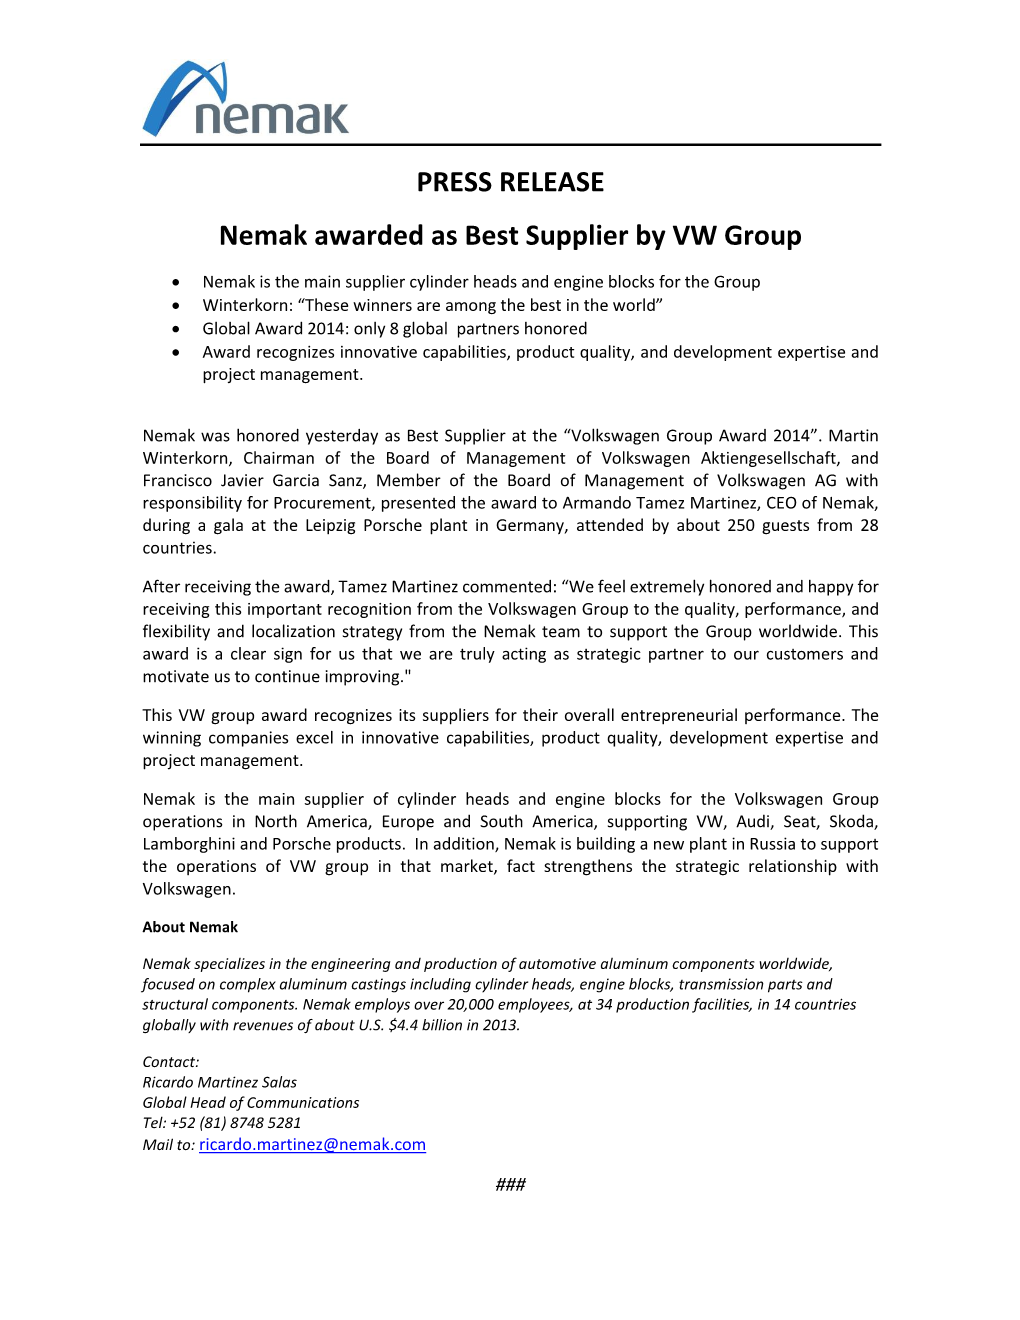 PRESS RELEASE Nemak Awarded As Best Supplier by VW Group